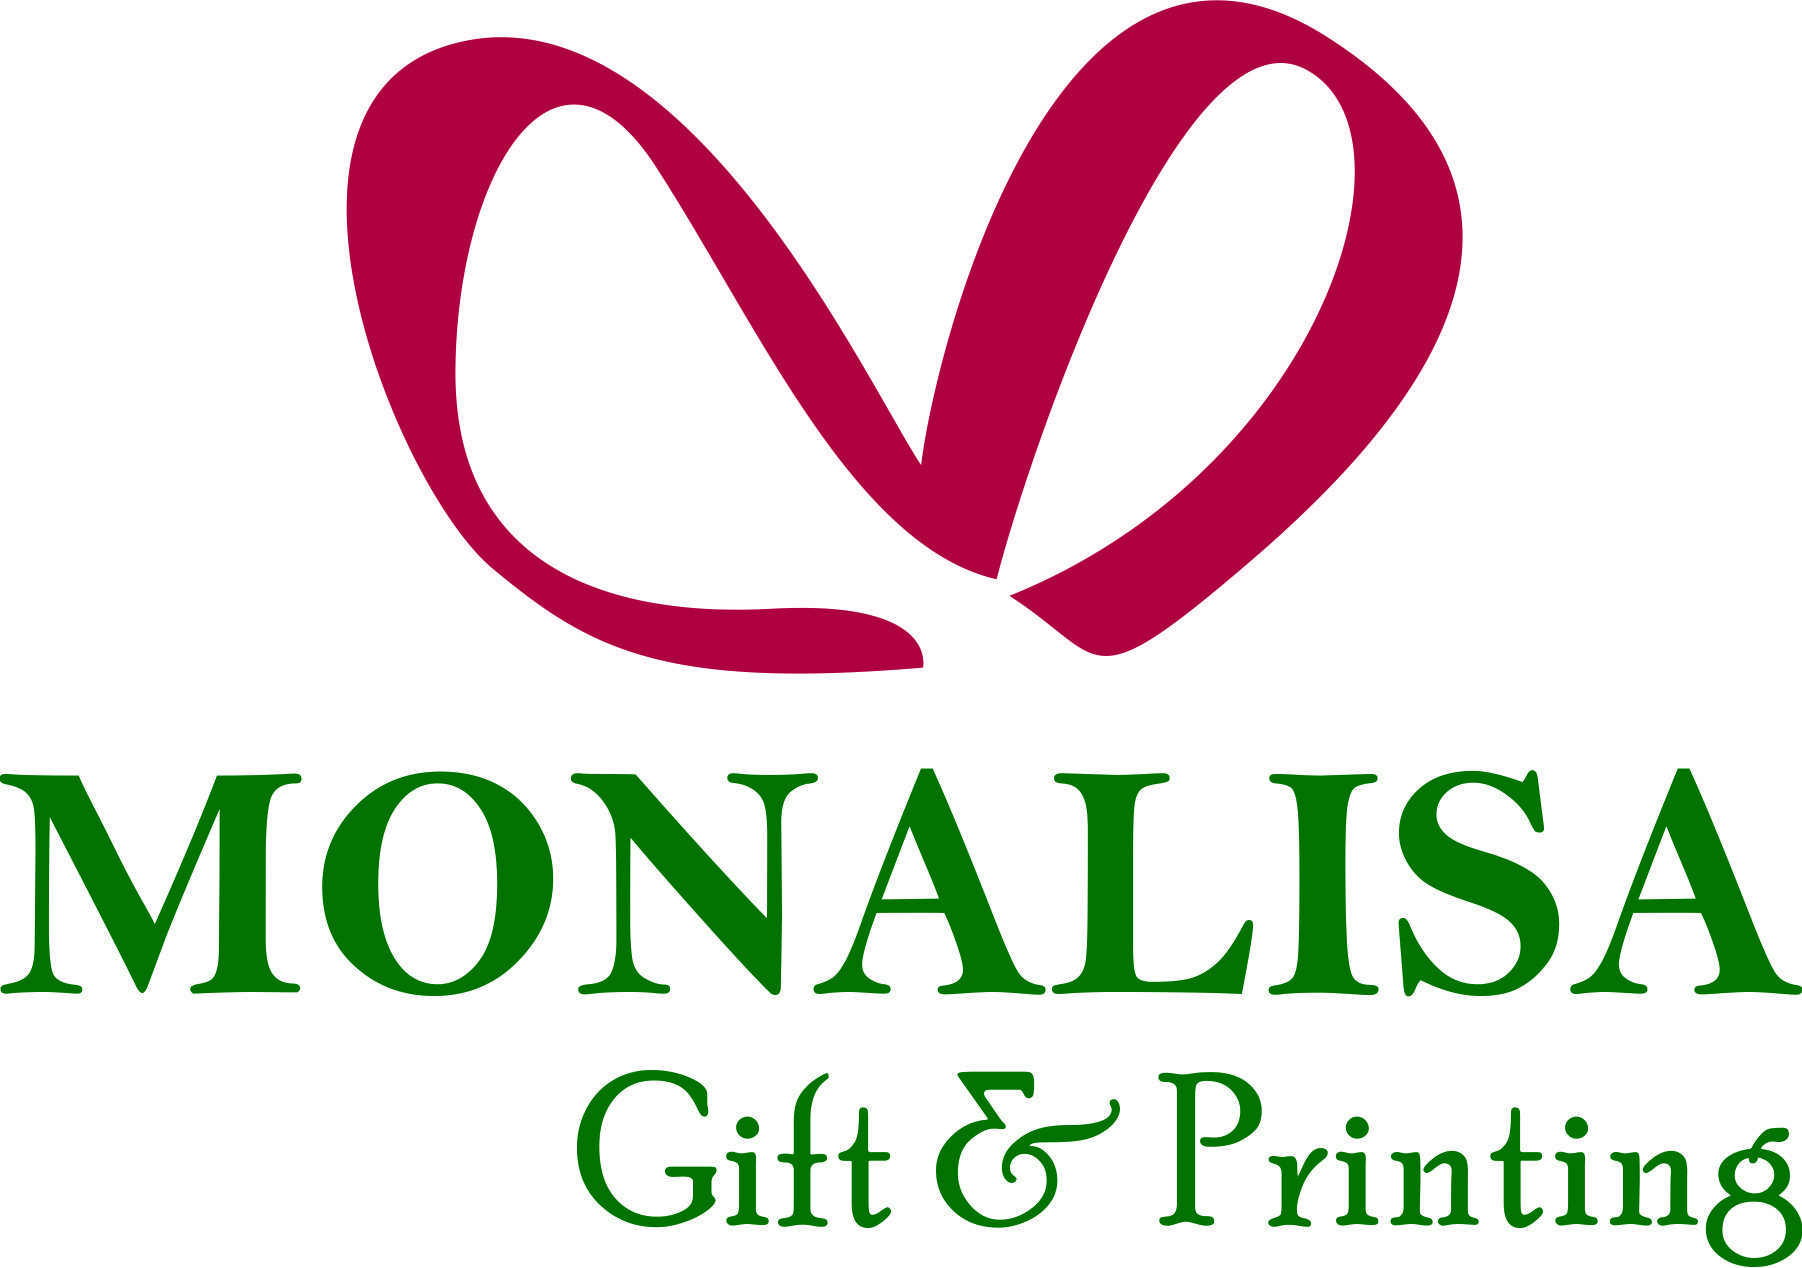 Quà tặng Monalisa Gift đa dạng về mẫu mã,giá cả phù hợp và uy tín về chất lượng khiến việc lựa chọn của khách hàng trở nên dễ dàng